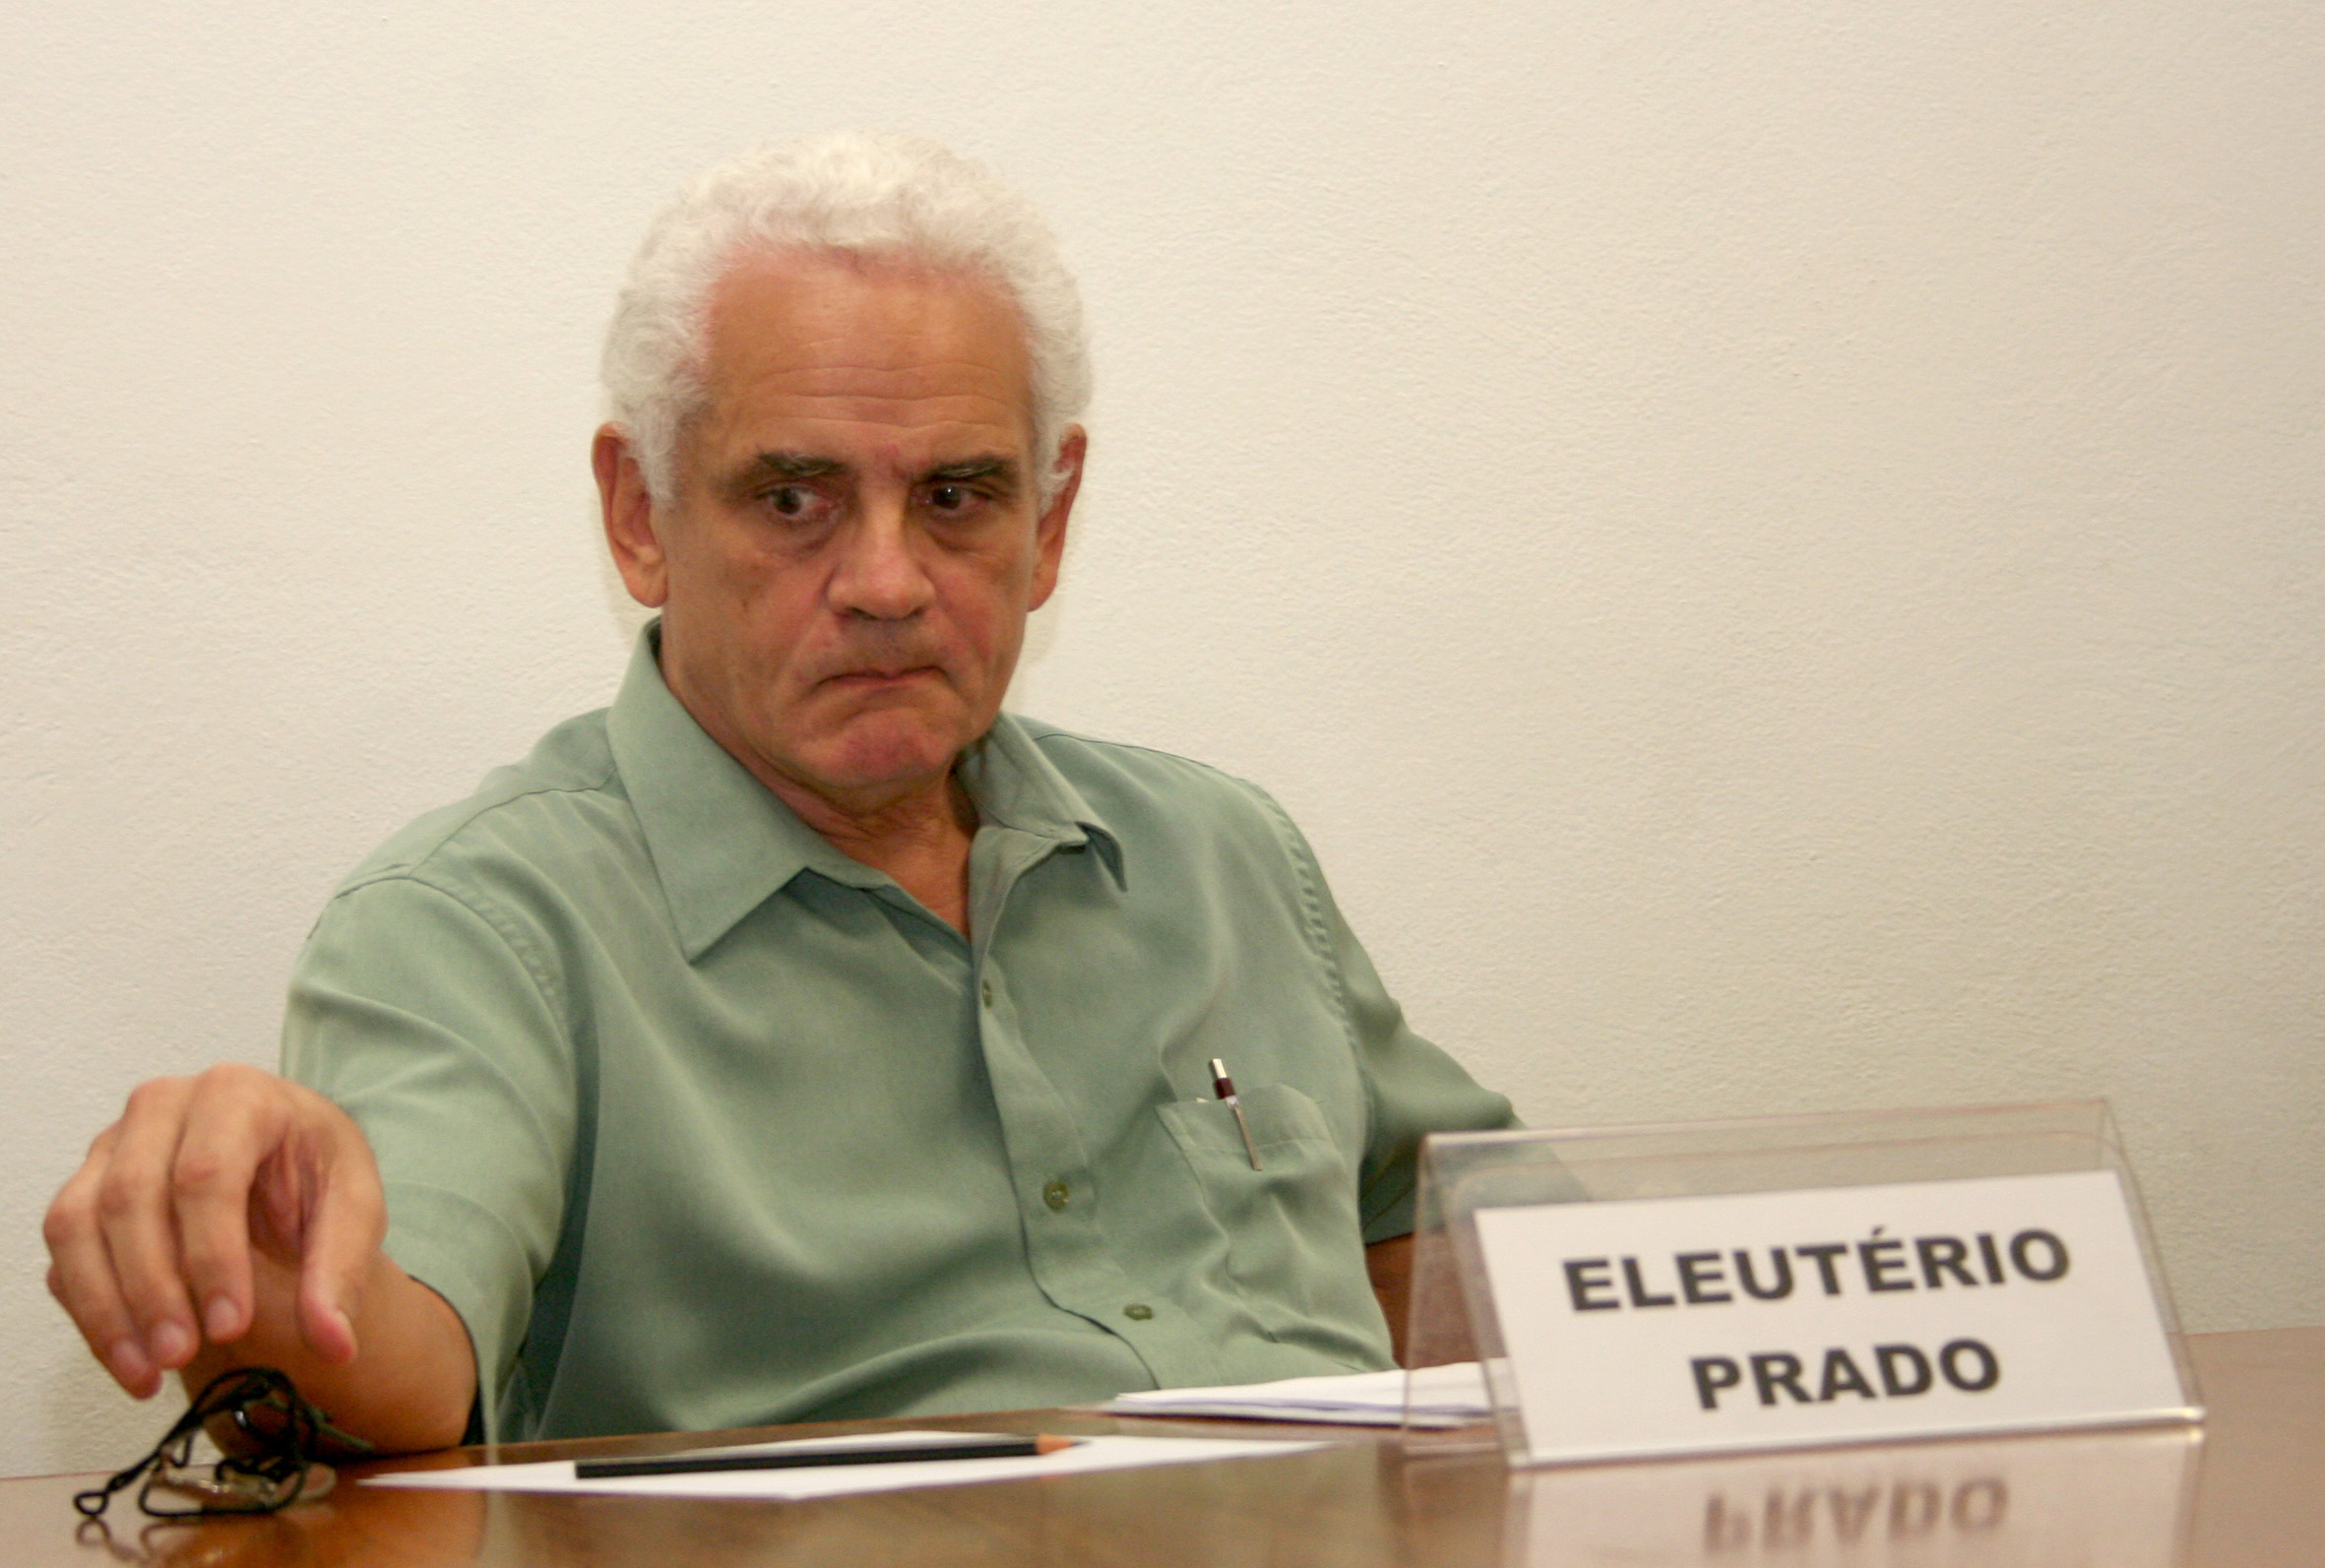 Eleutério Prado